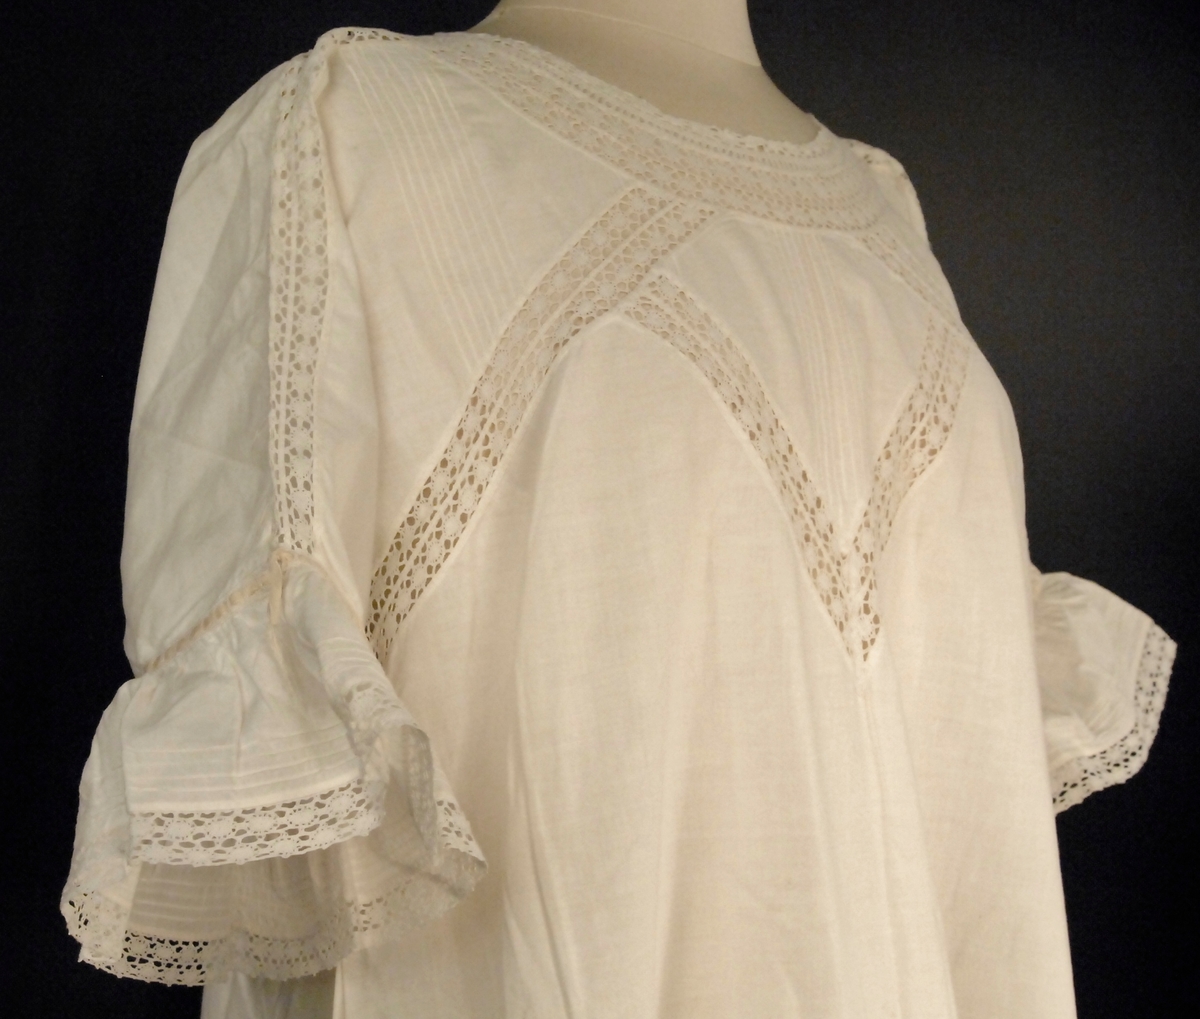 Dekorert med biser, blonder og smale gule silkebånd. Kort erme med kappe. Utskrådd kjole med kiler i sidene nederst.